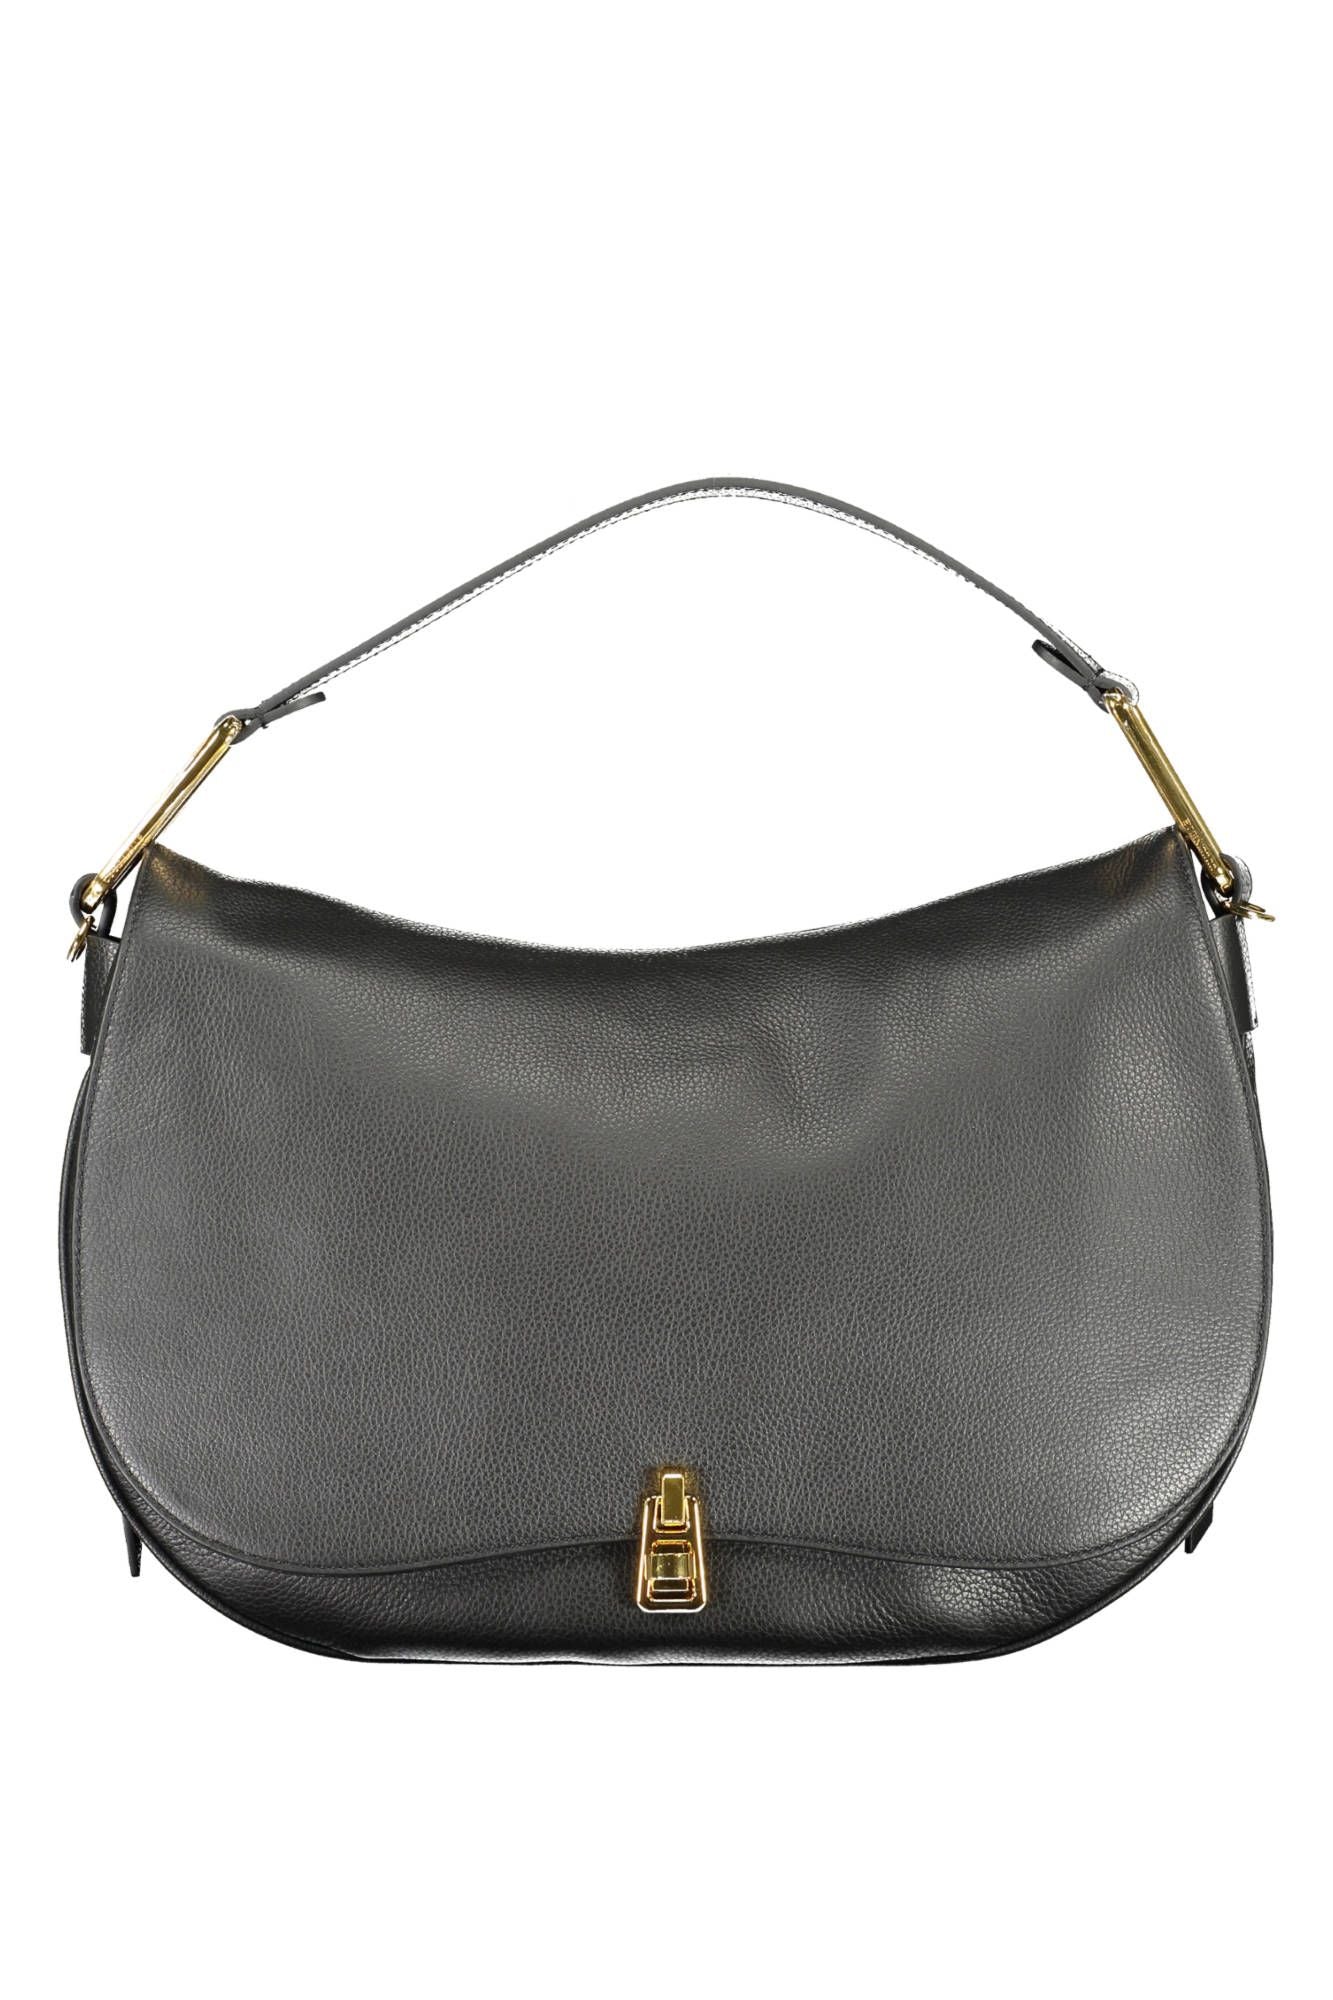 Coccinelle Chic Black Leather Shoulder Bag